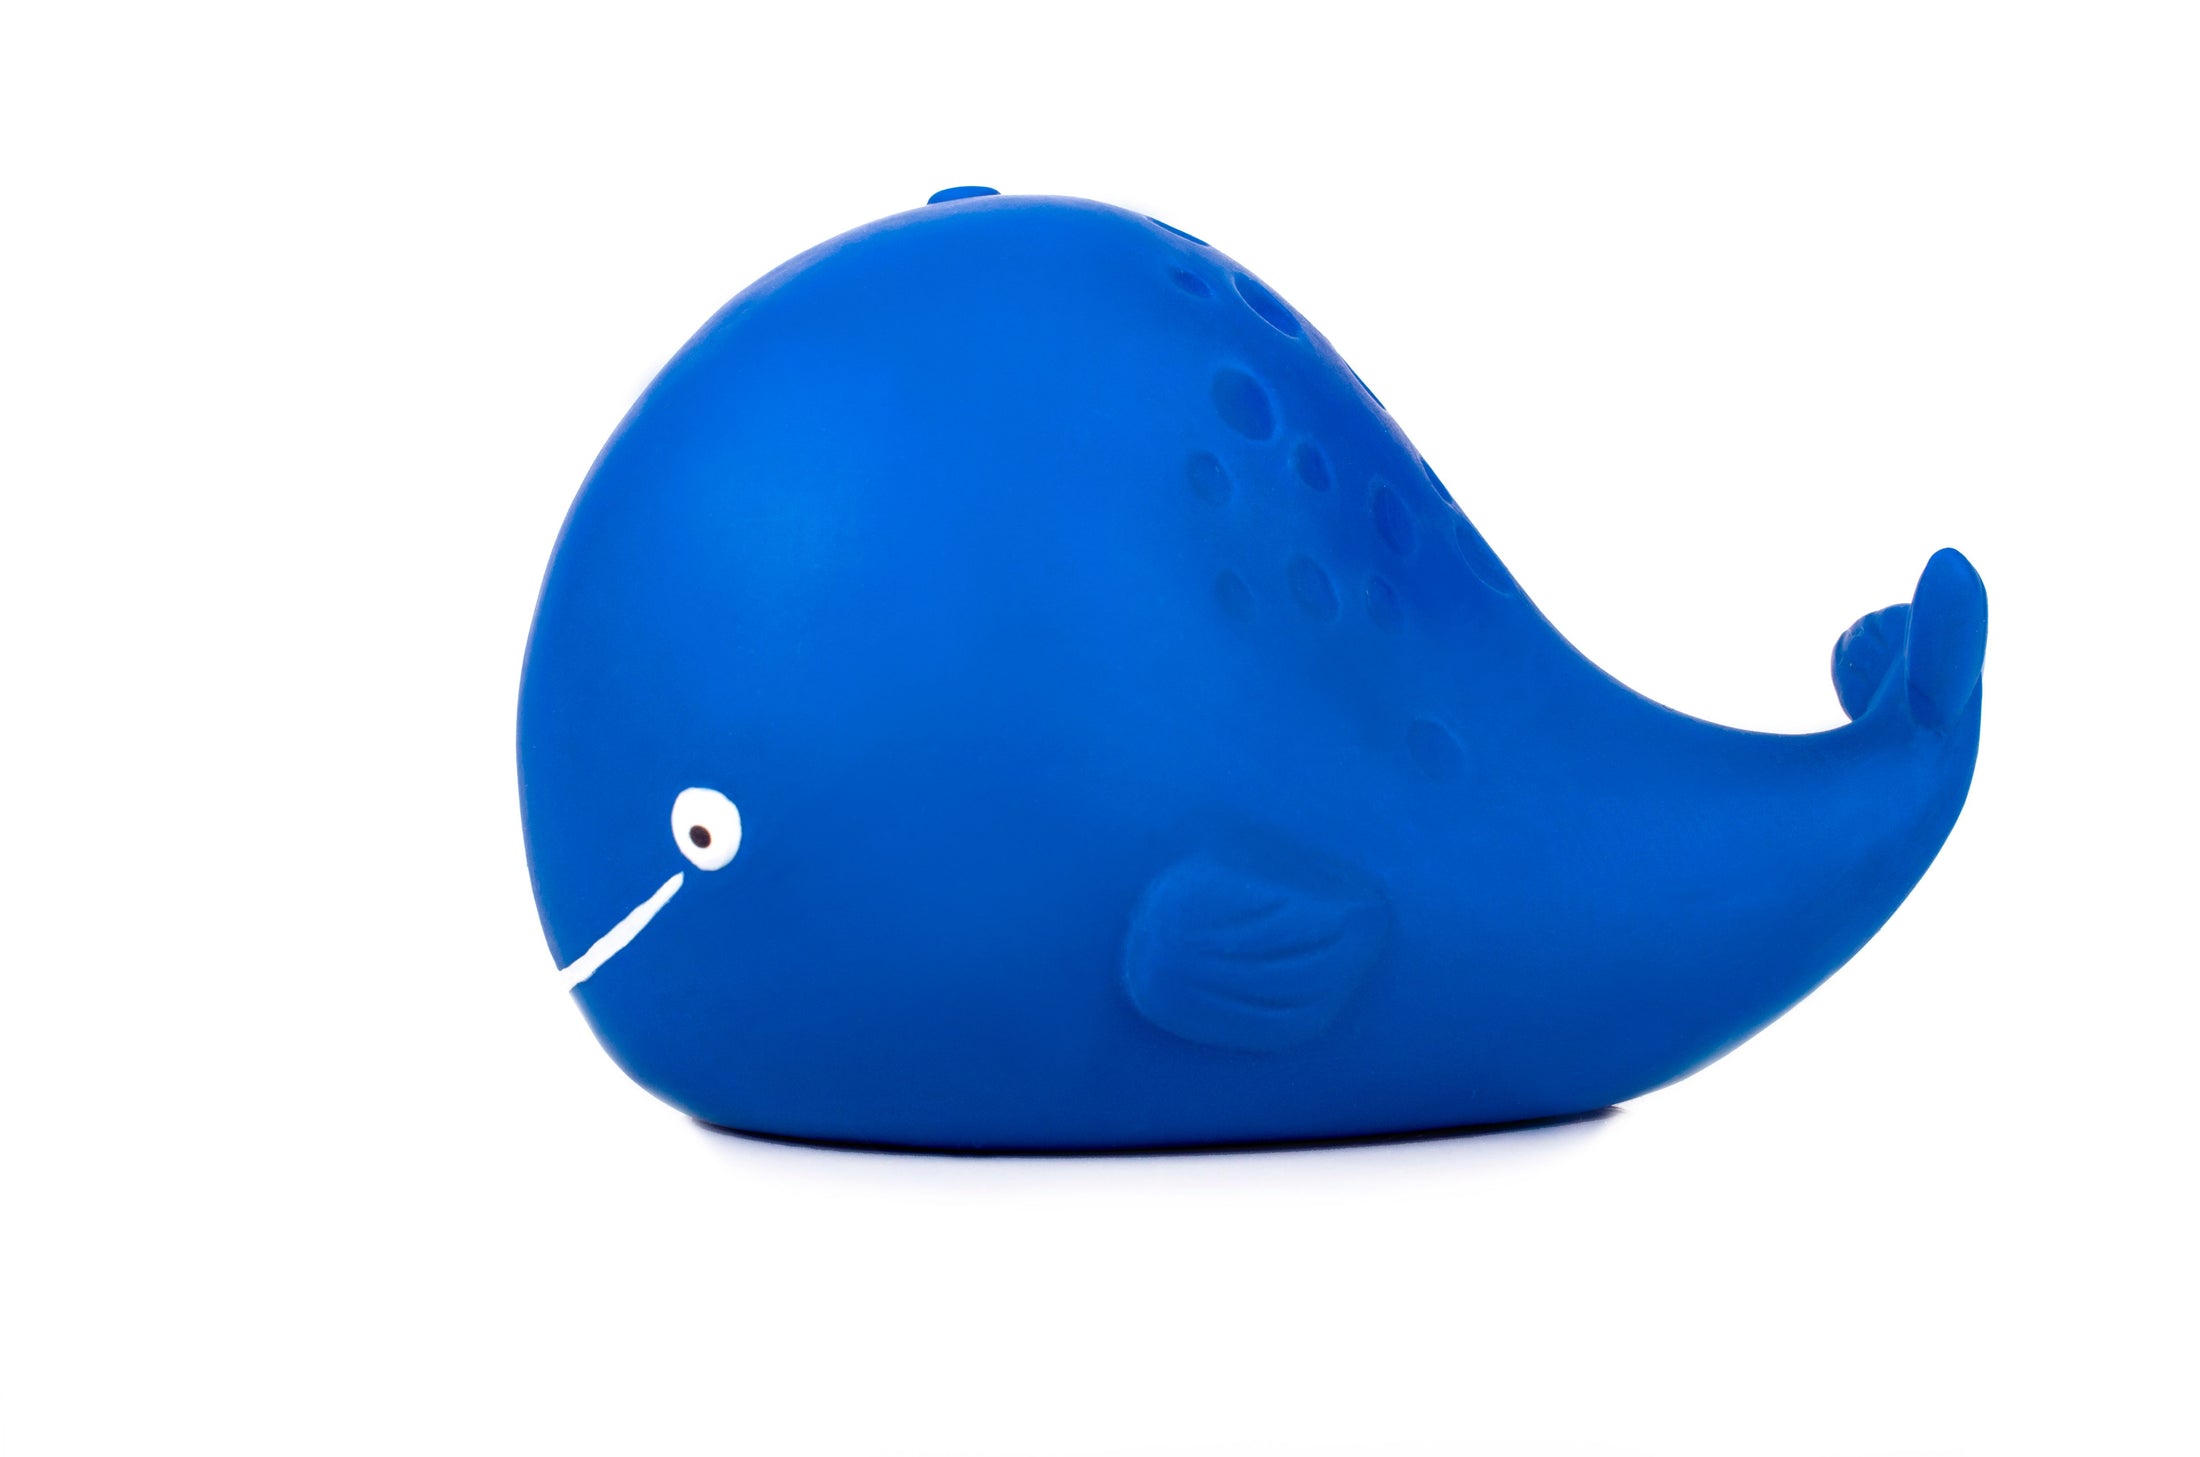 Caaocho - Whale - Bath toy